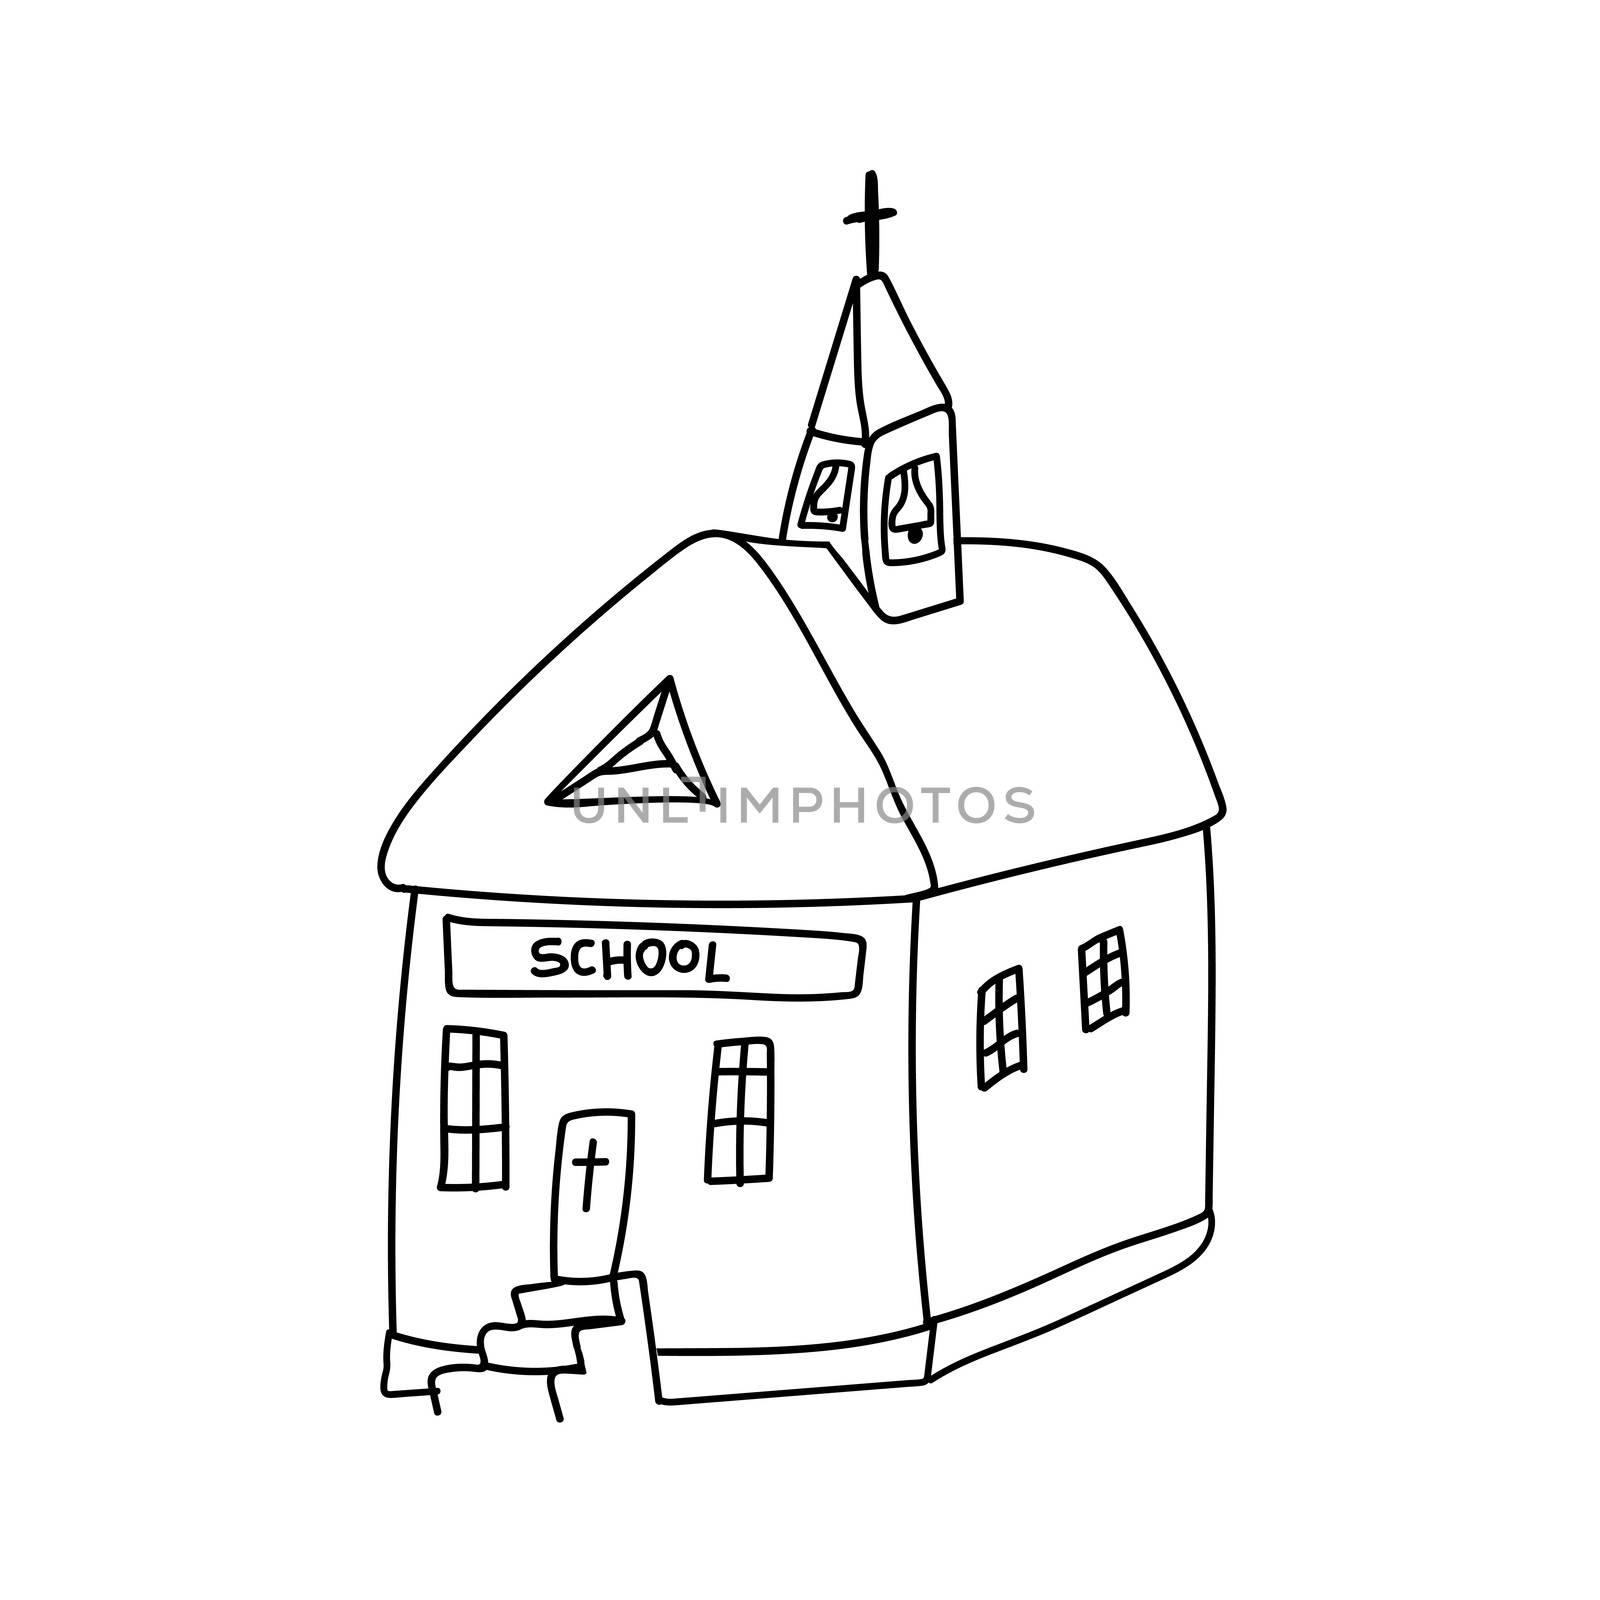 Doodle style Catholic church. Sunday Catholic school. illustration.